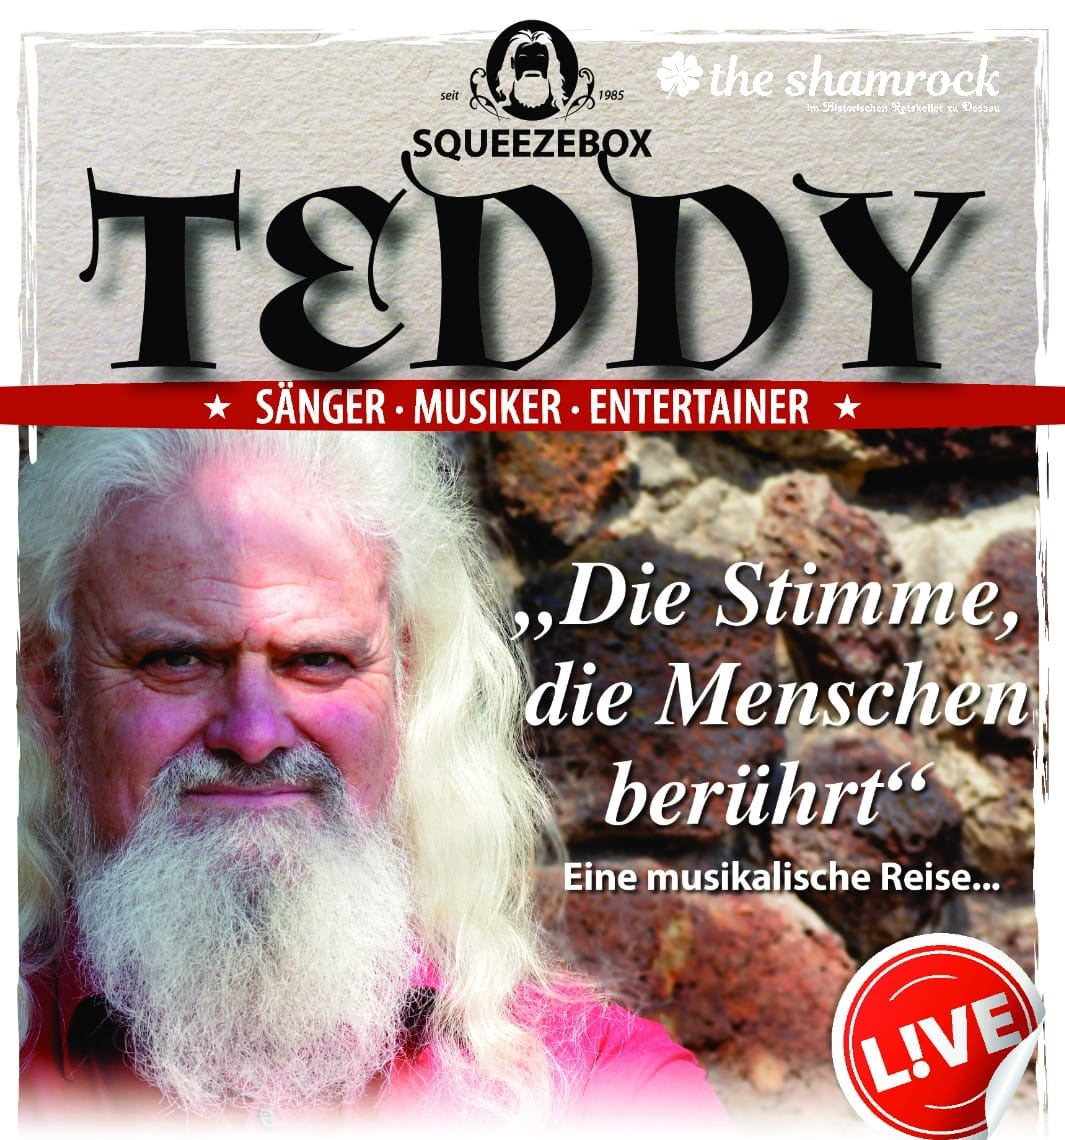 Teddy im Shamrock Dessau